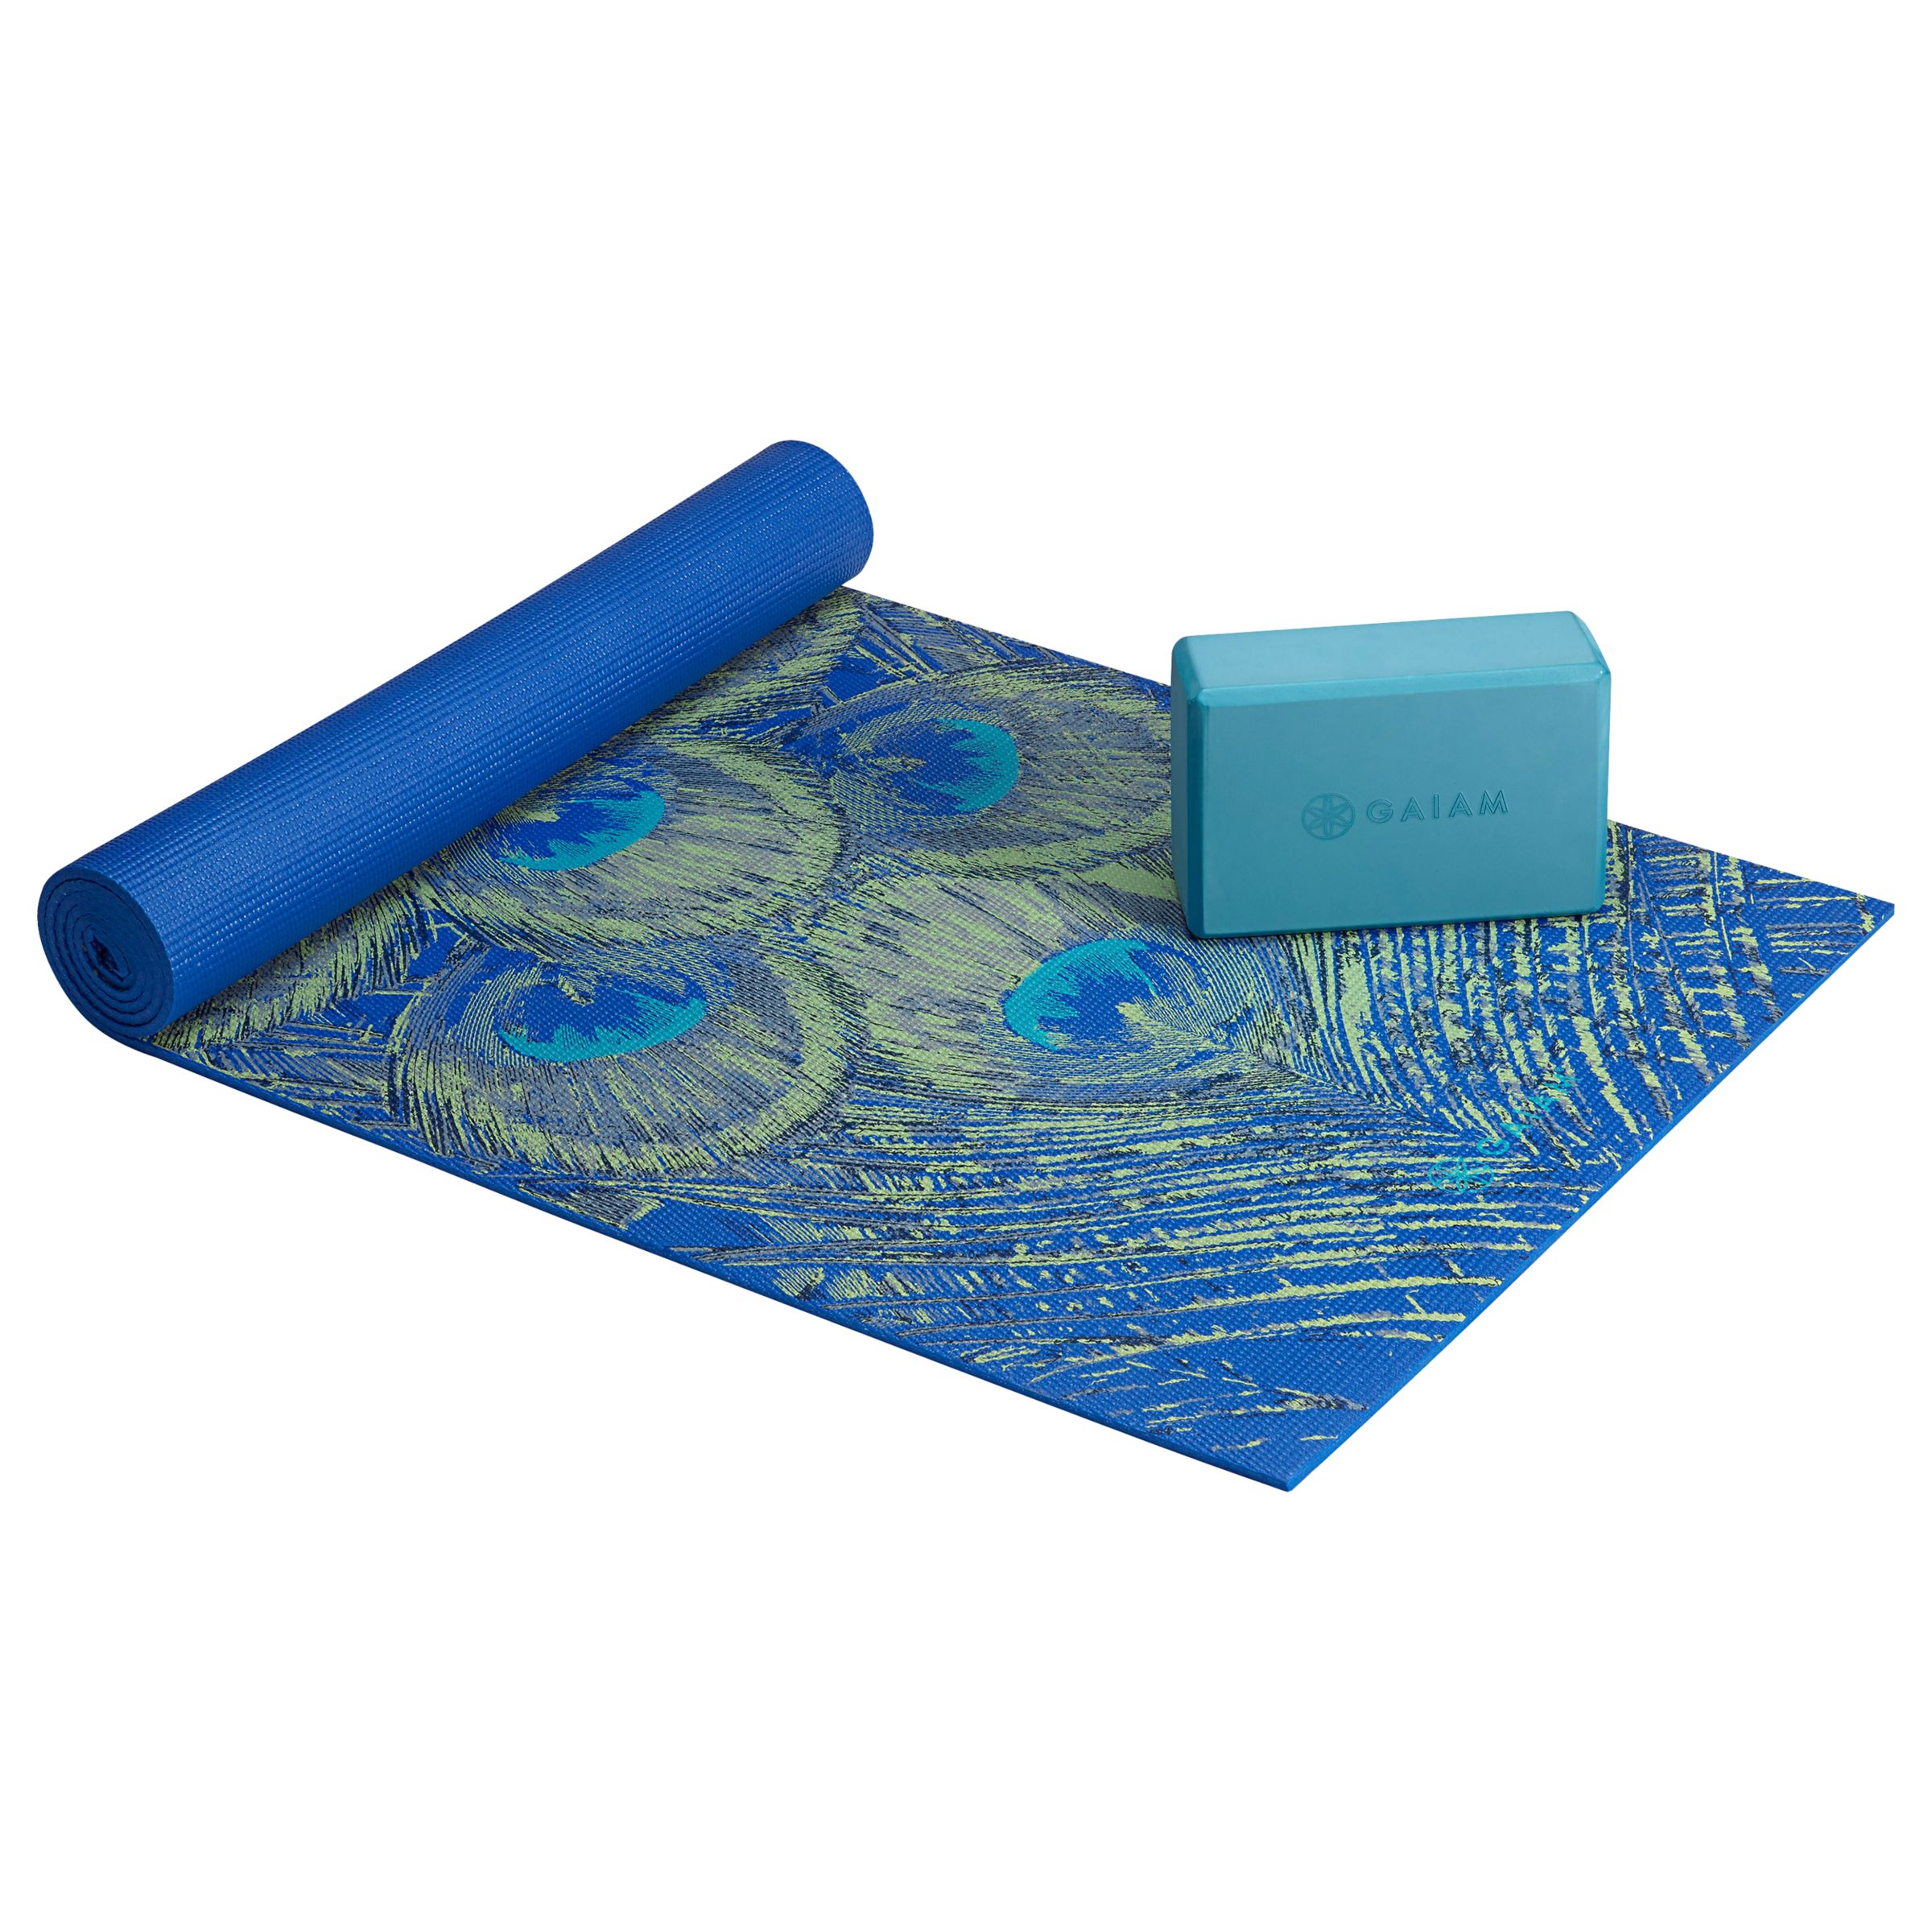 Shop The Set: Yoga Essentials Kit  Yoga essentials, Lululemon yoga mat,  Yoga mats design